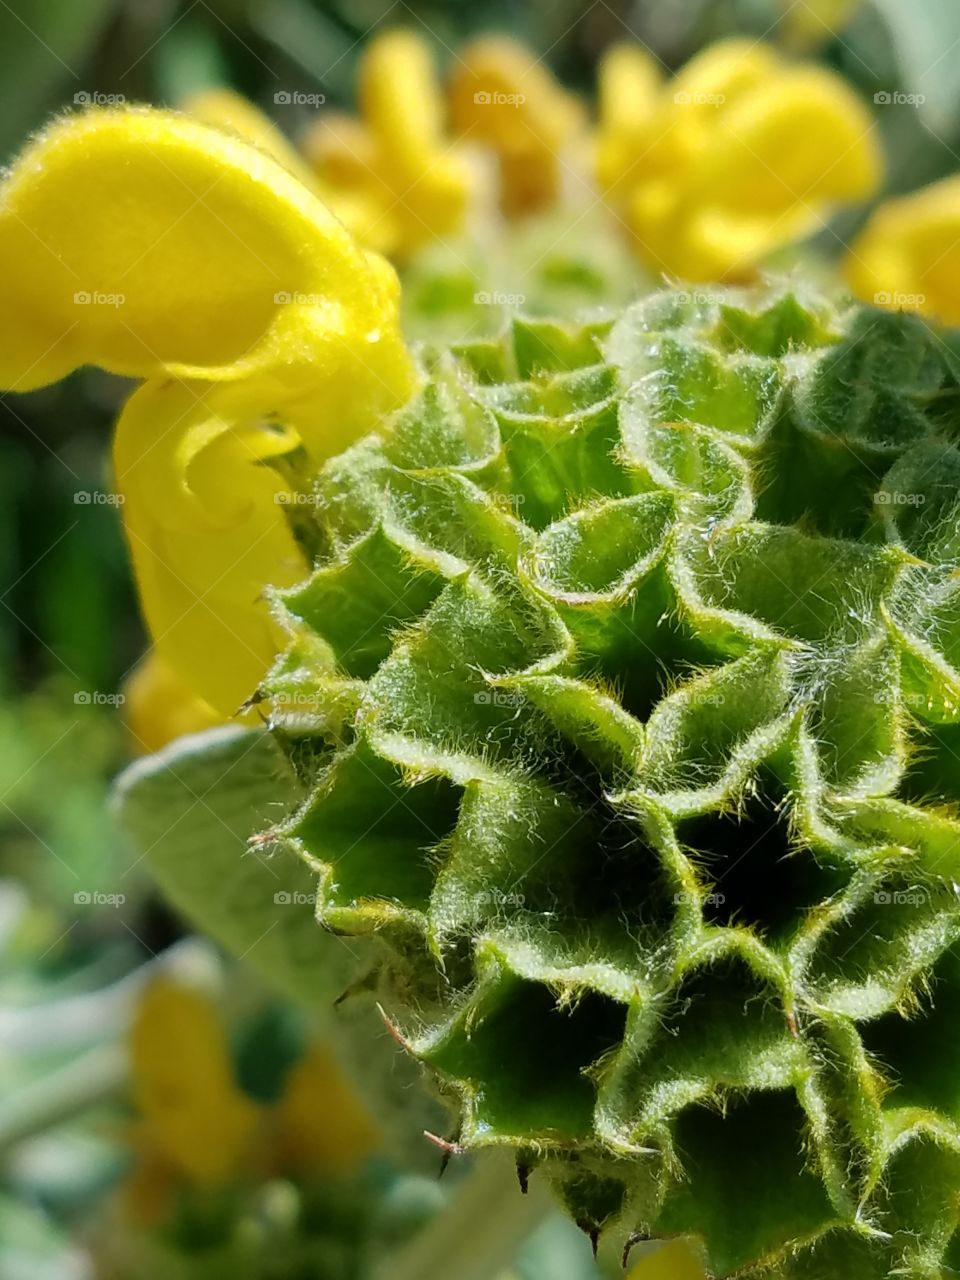 fuzzy flower pod